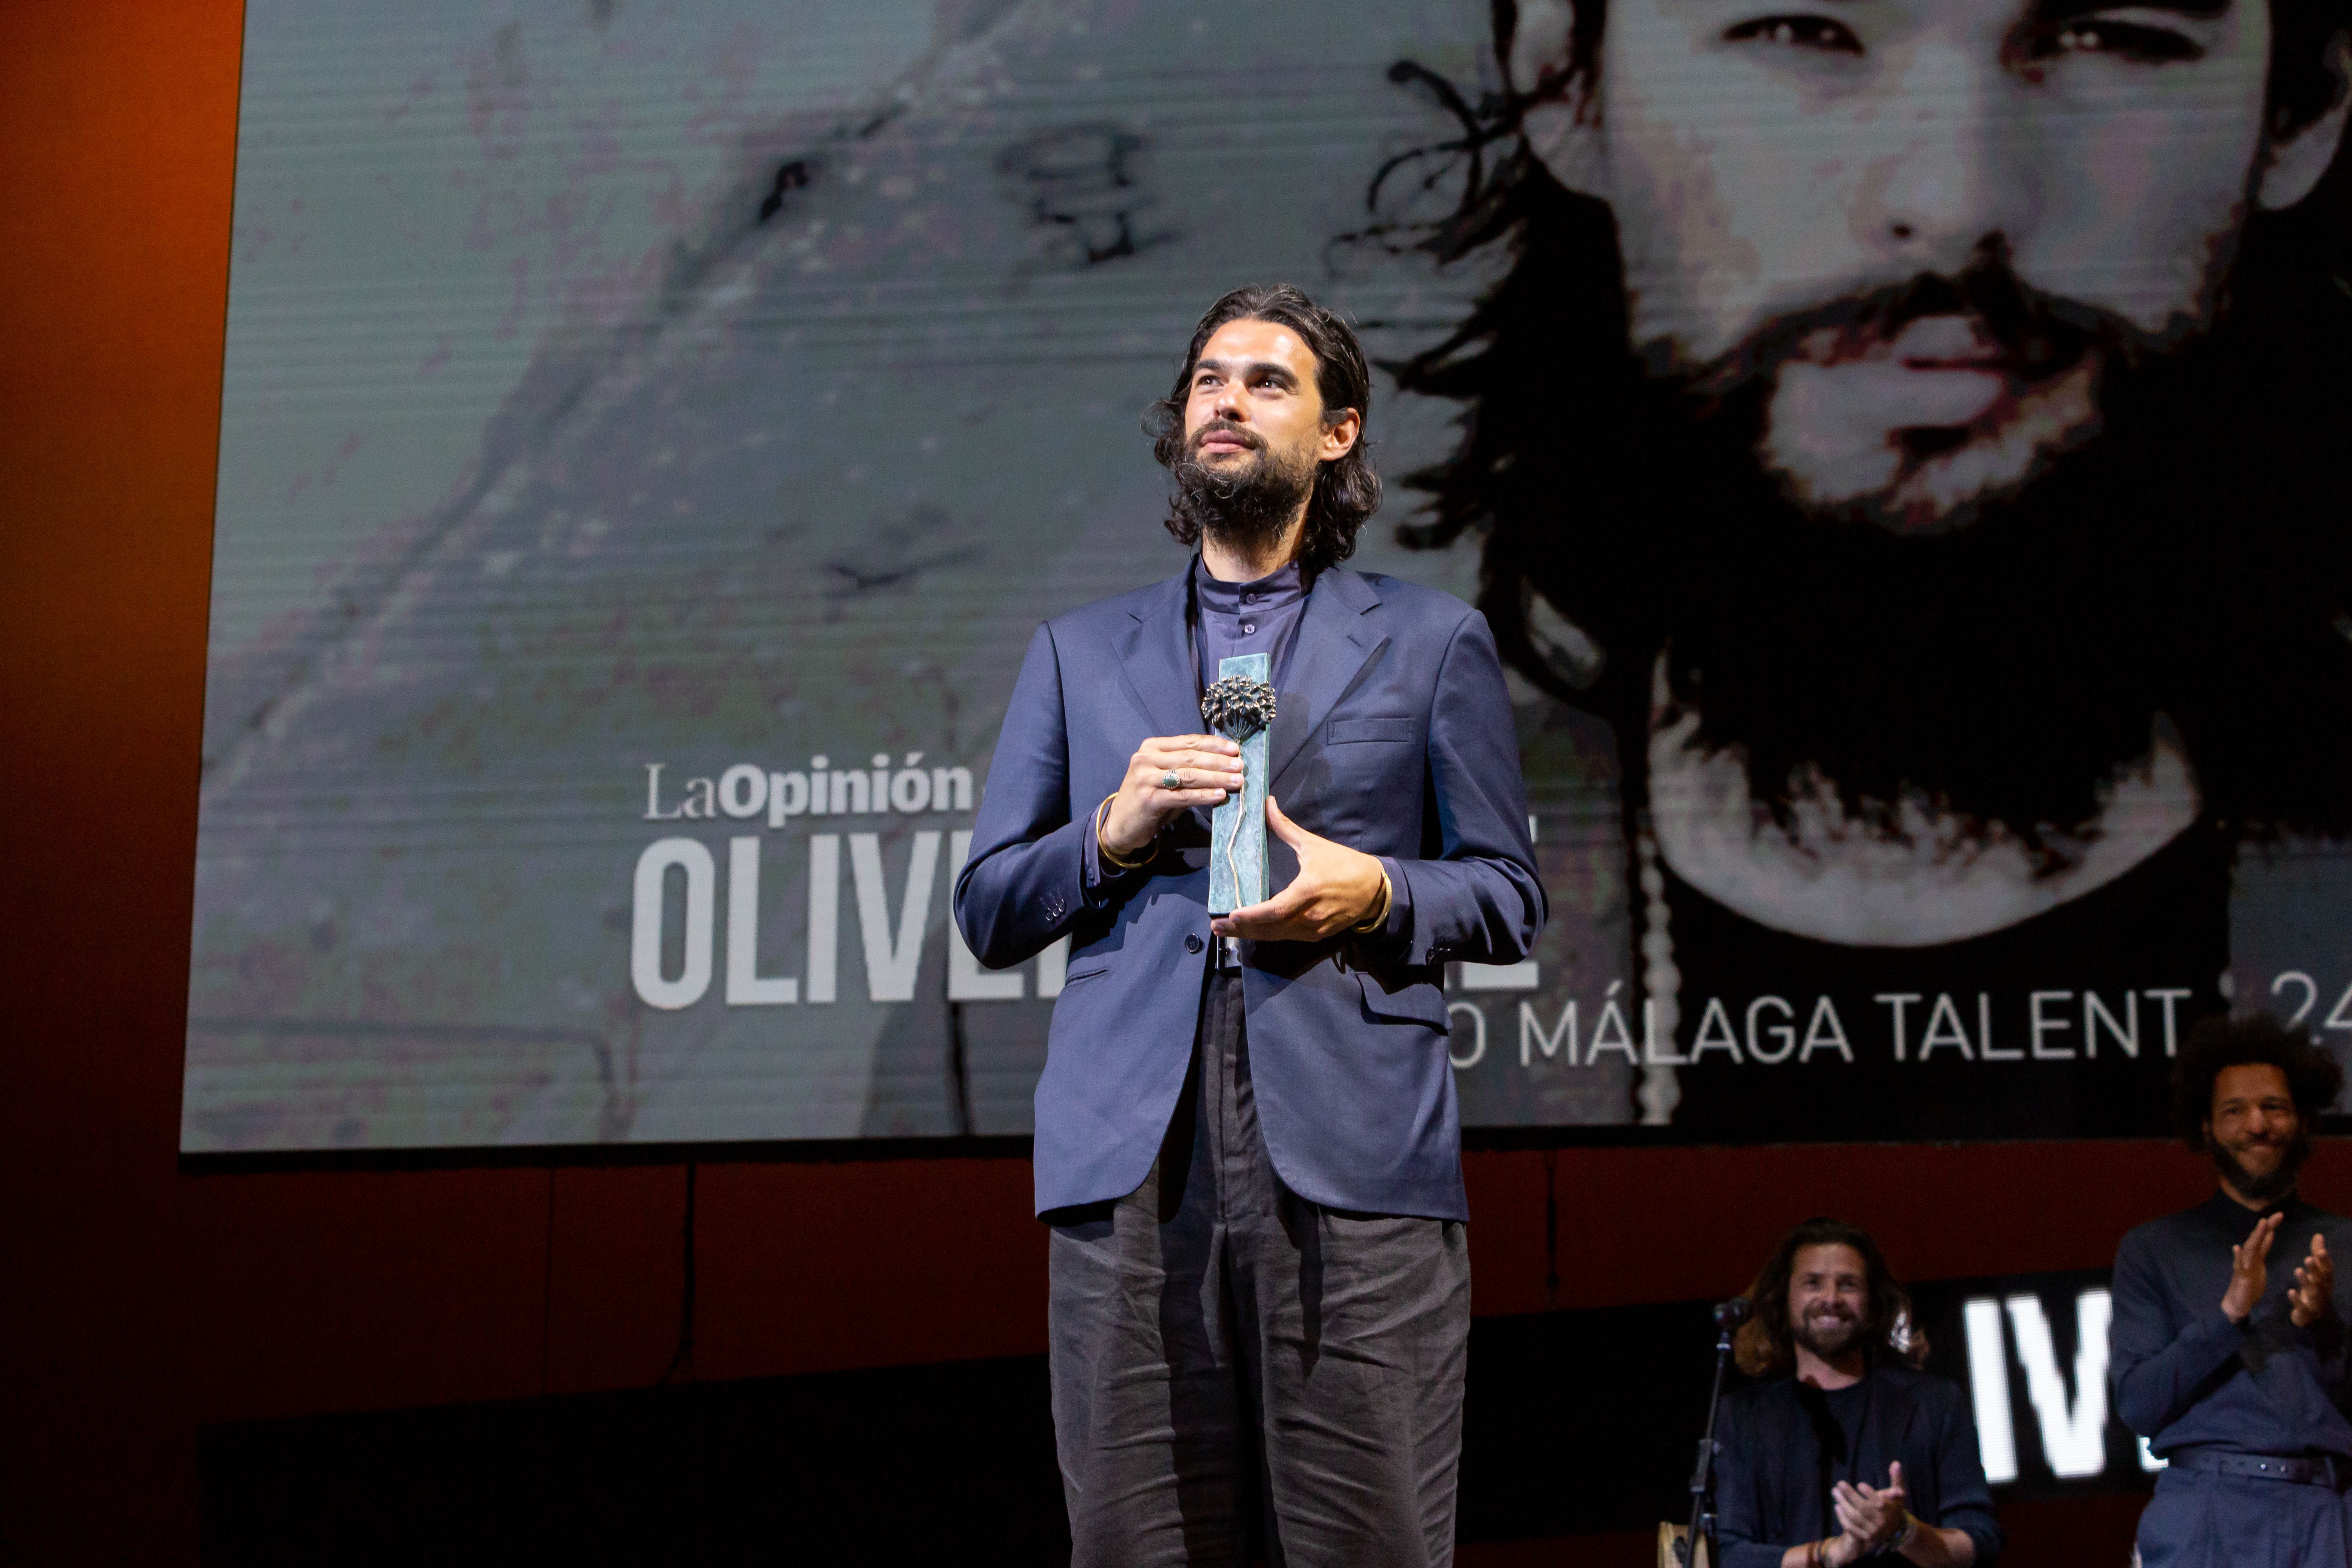 El Festival de Málaga ha dedicado el premio 'Málaga Talent' al cineasta gallego Oliver Laxe, que lo ha recogido este pasado domingo.   KOKE PÉREZ